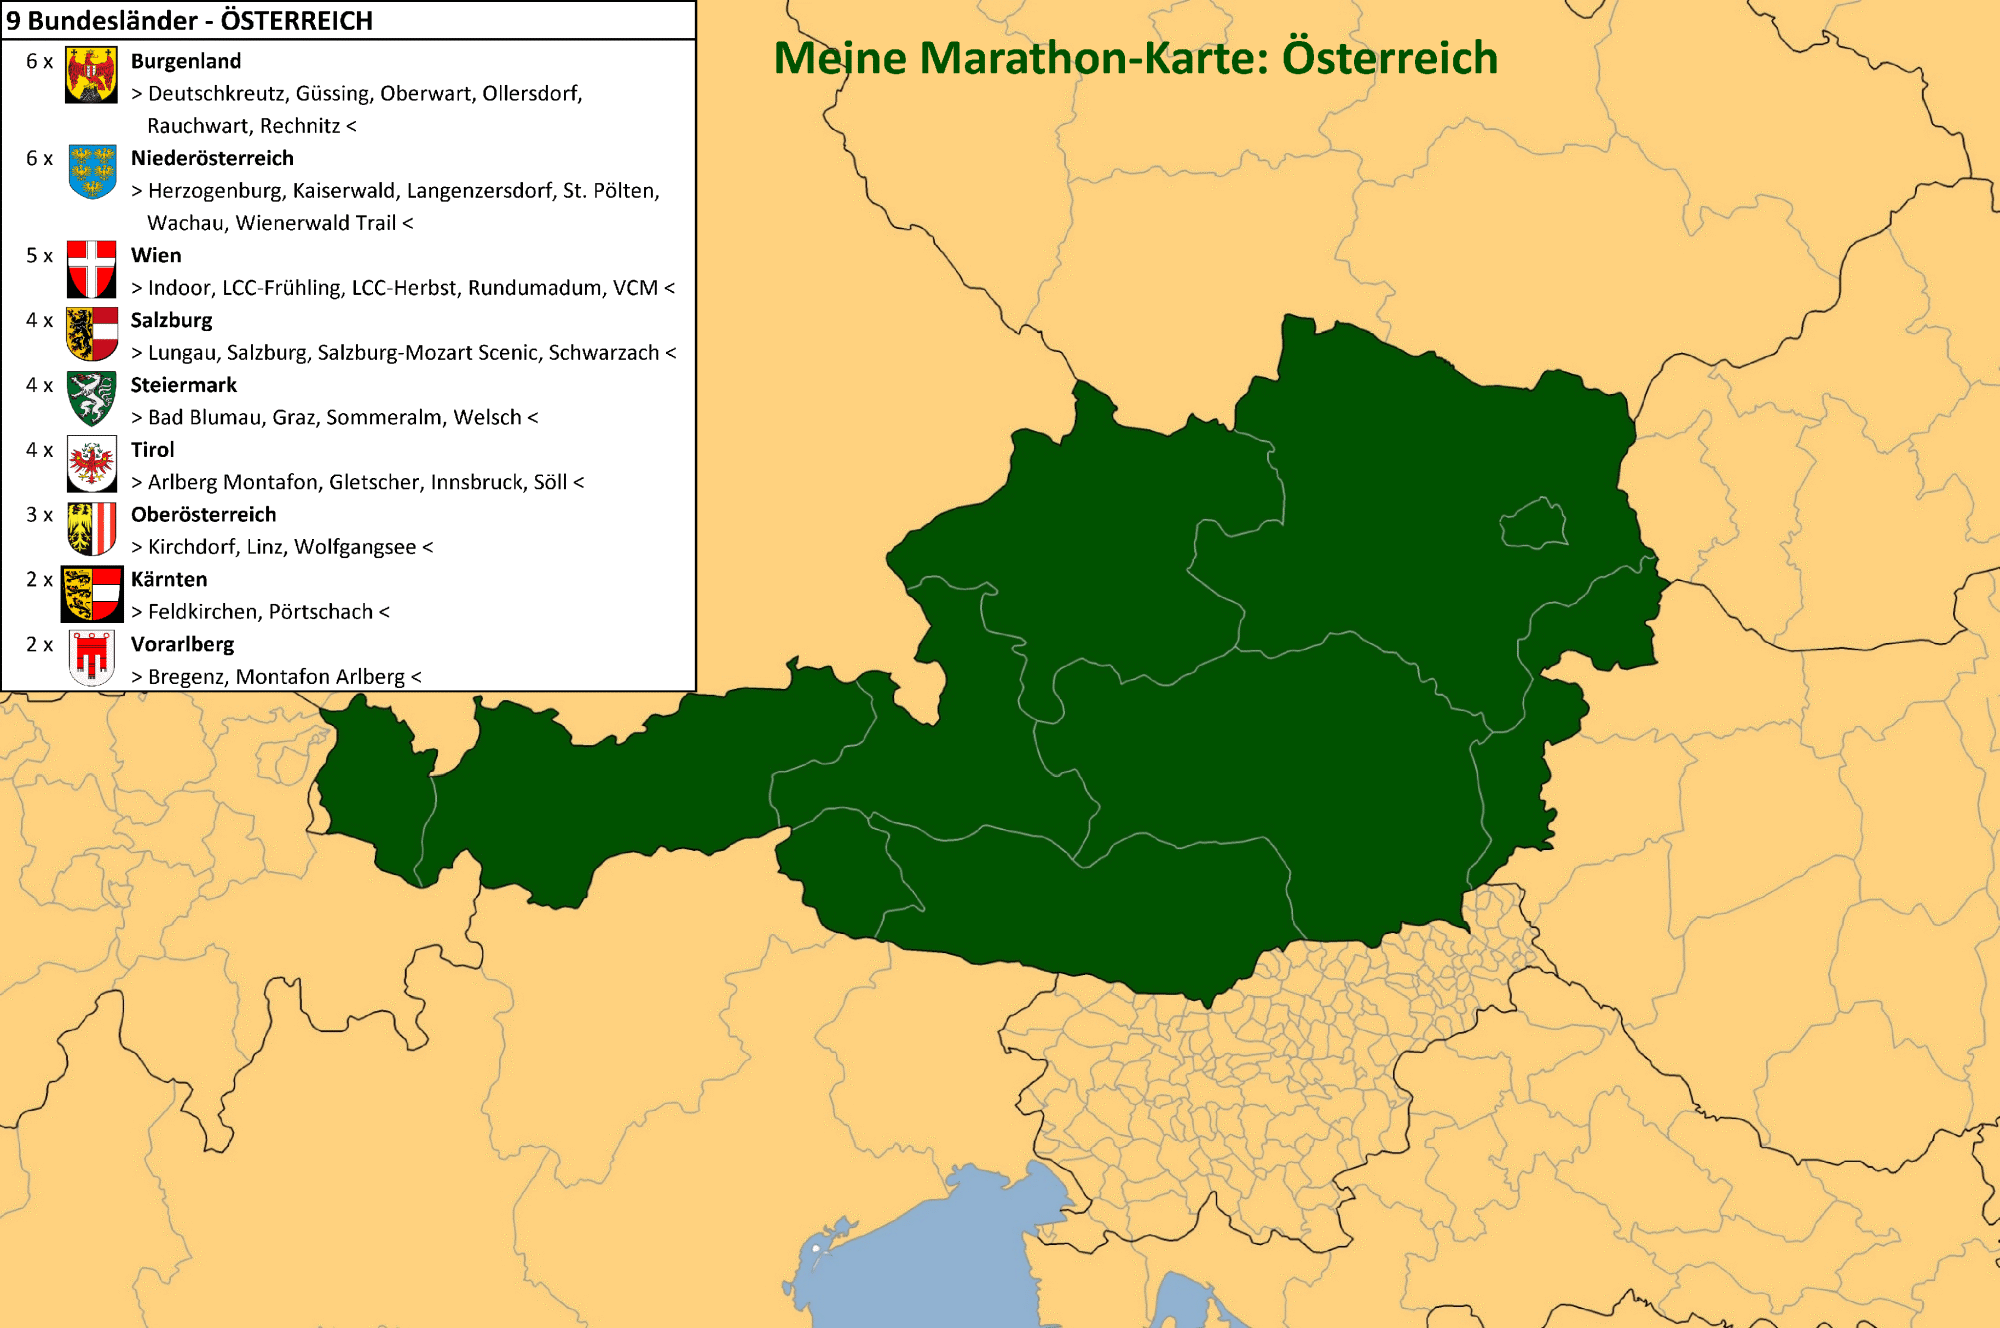 Meine Marathon-Karte: Österreich